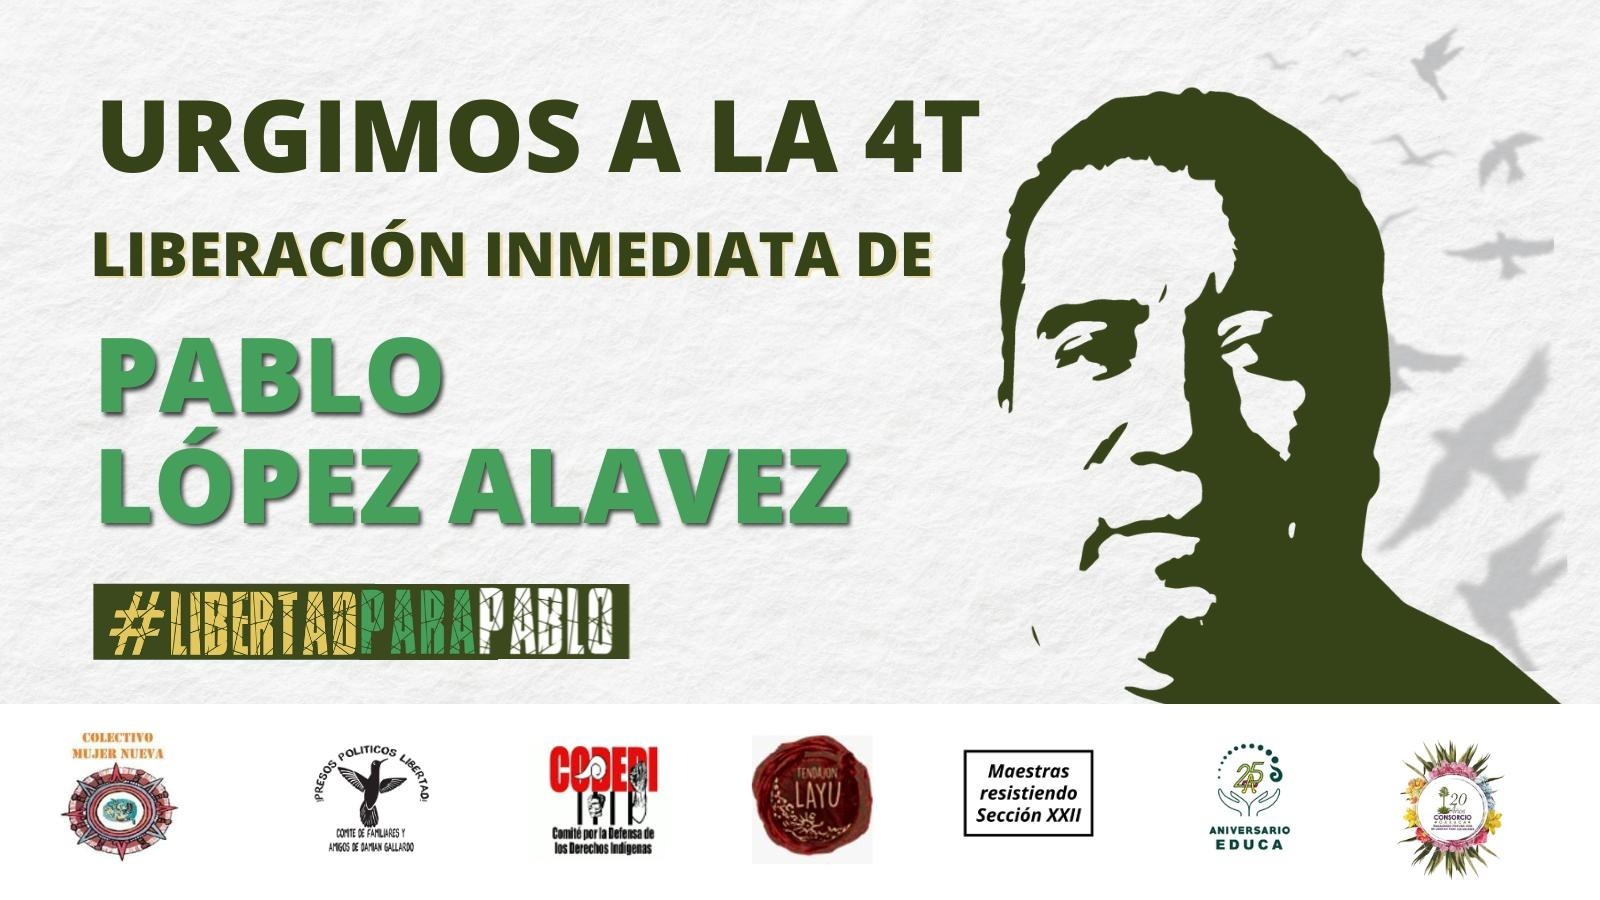 Urgimos a la 4T liberación inmediata de Pablo López Alavez